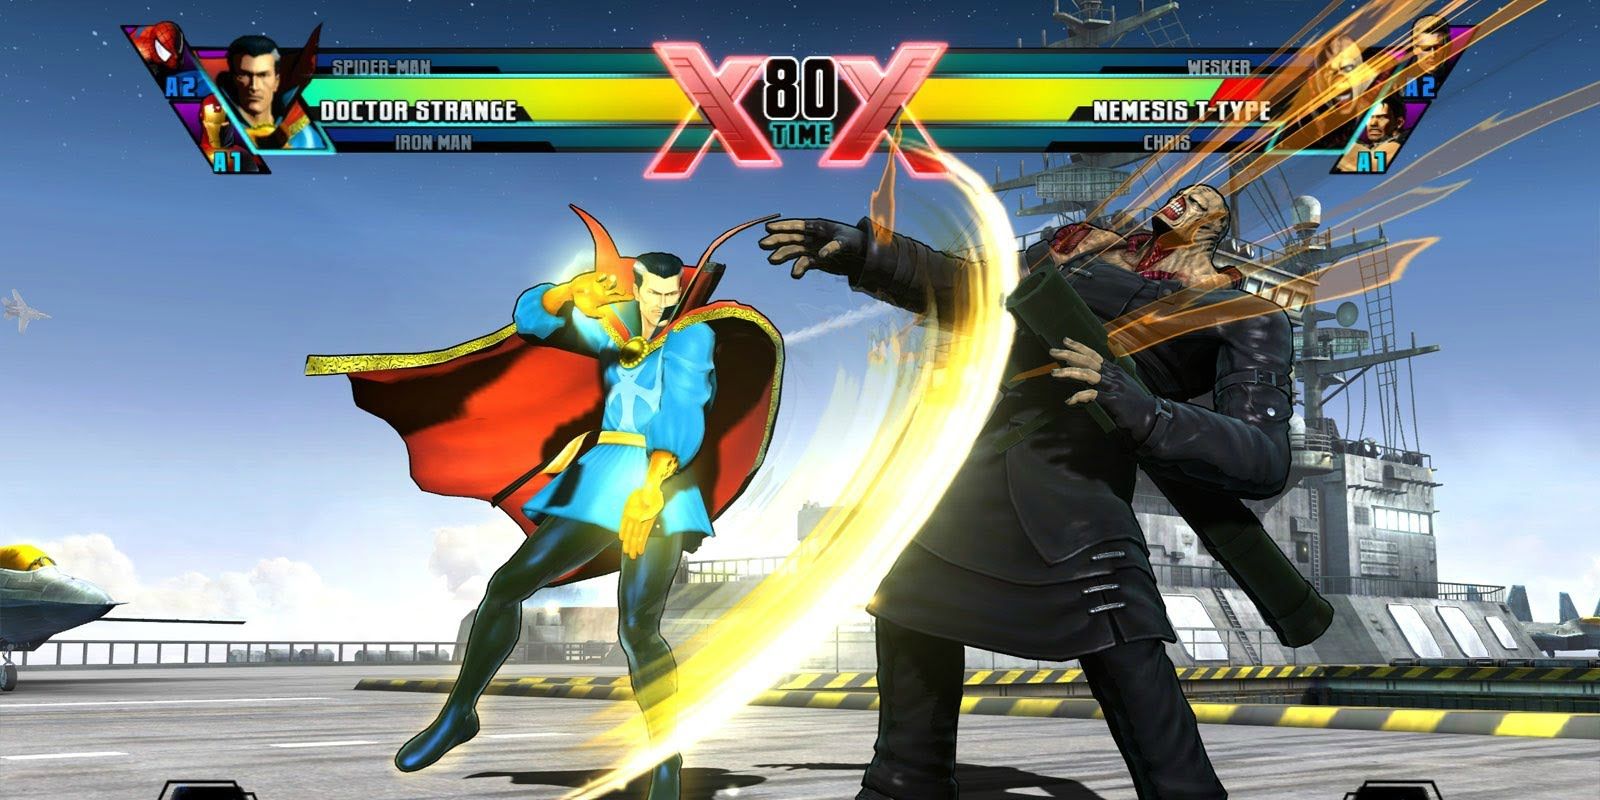 Doctor Strange in Marvel vs Capcom 3